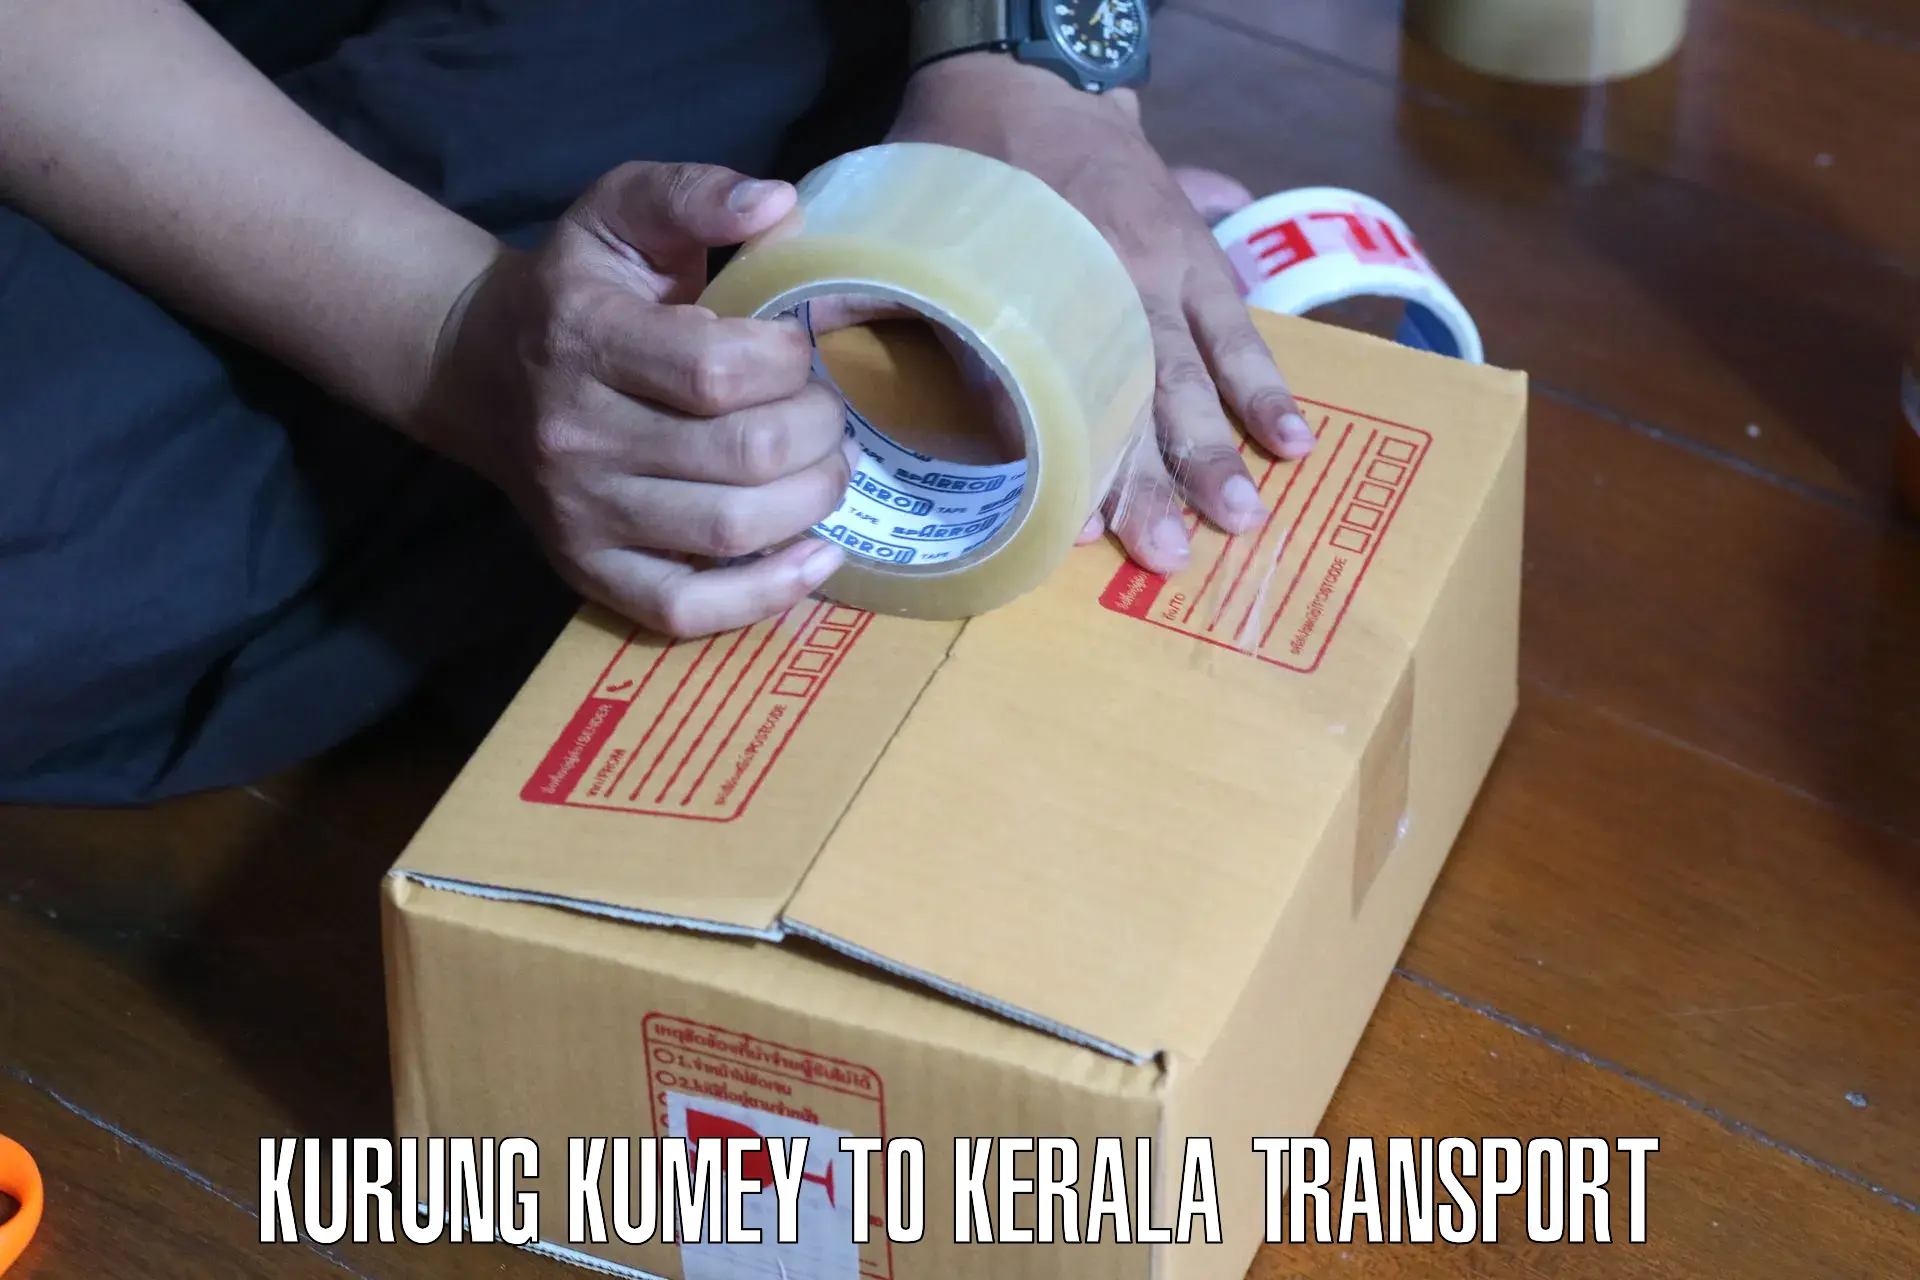 Nearest transport service Kurung Kumey to Kondotty